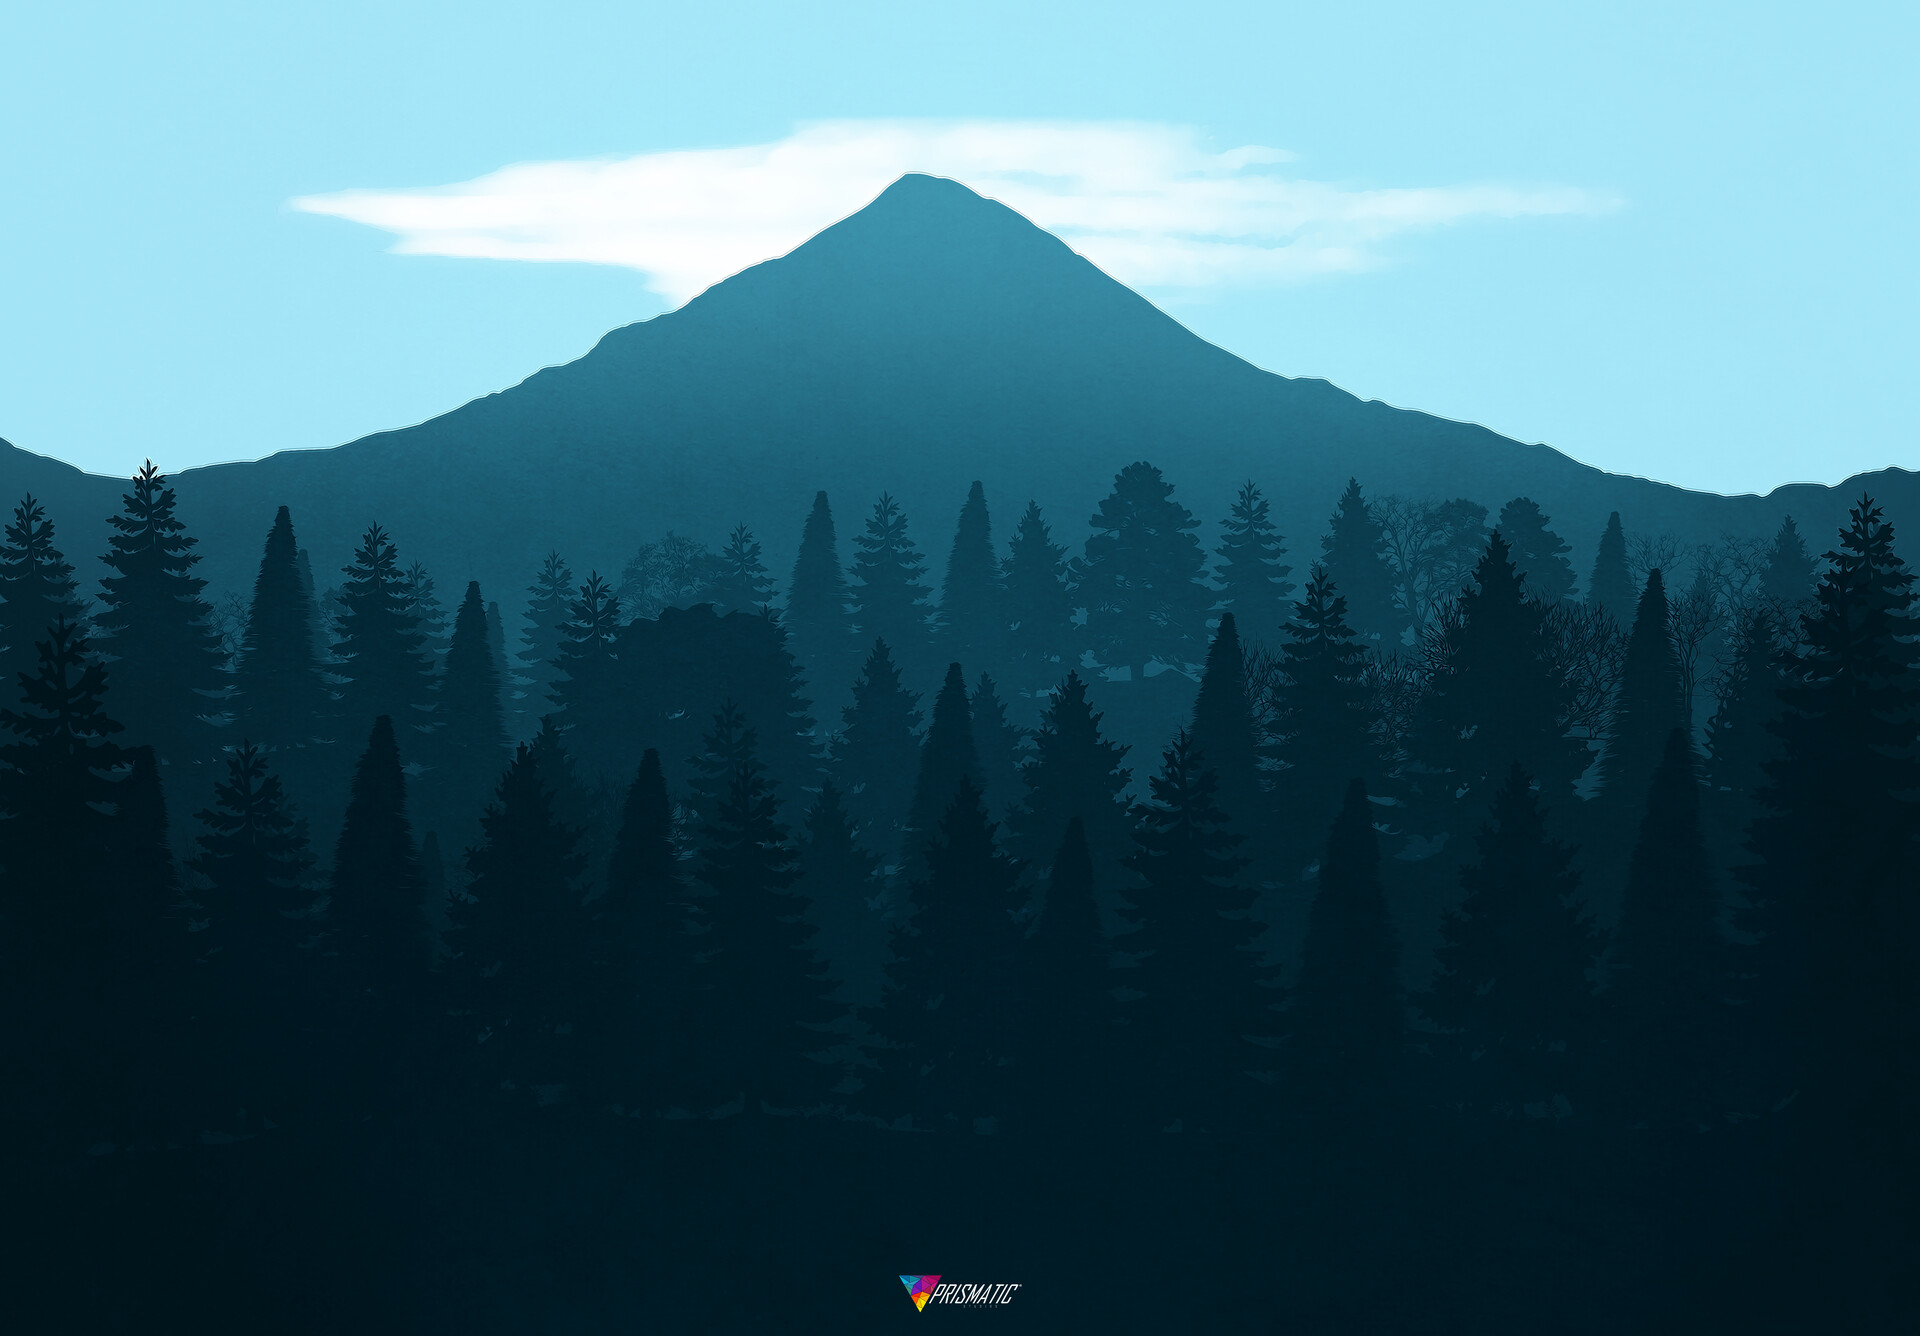 ArtStation - Blue Mountain Landscape